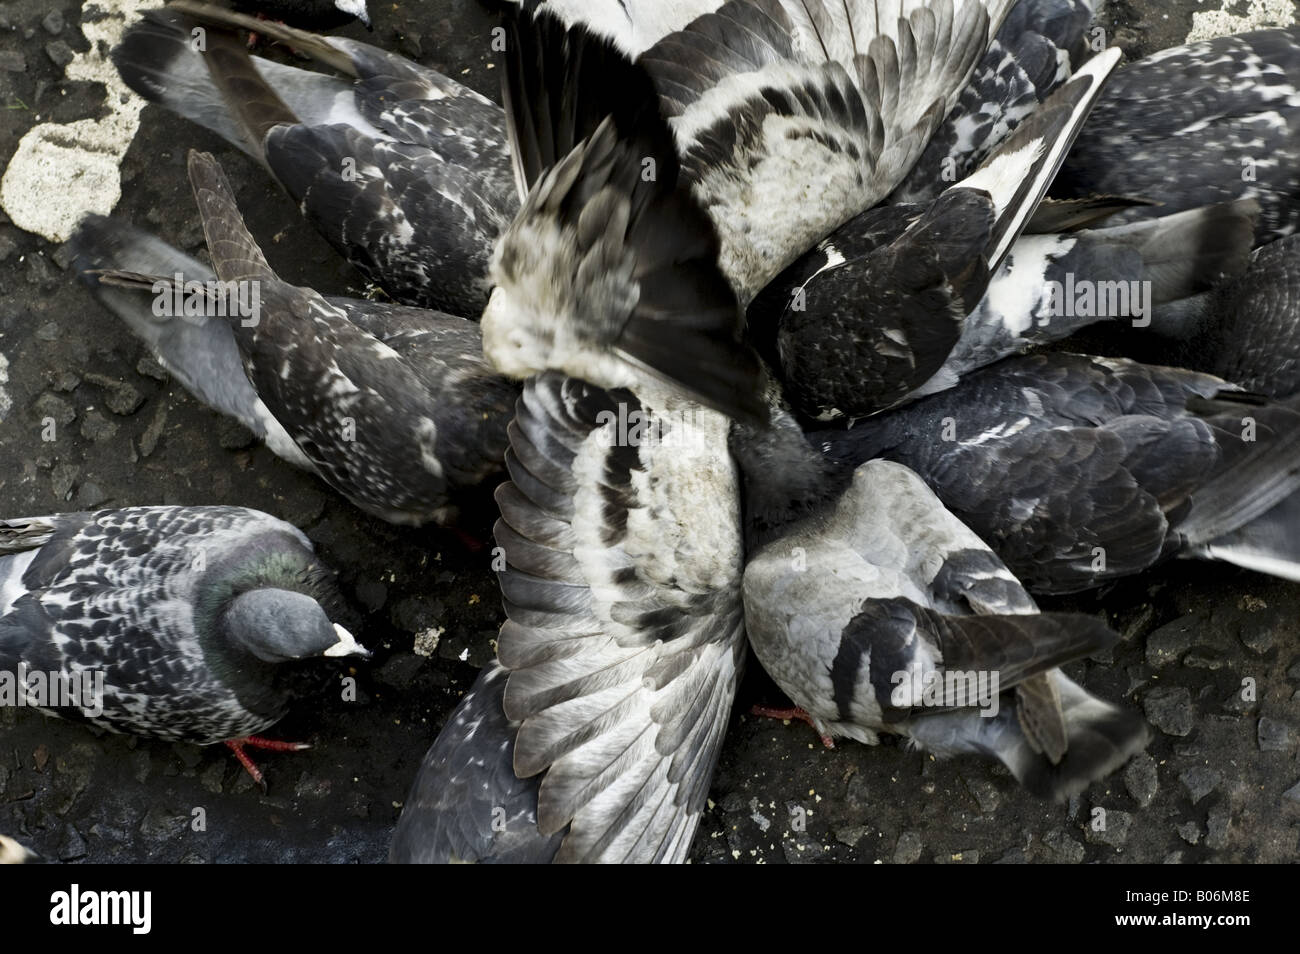 Tauben, Vögel, Federn, Chaos, Chaos, Flügel, Schnäbel, Krallen. Stockfoto